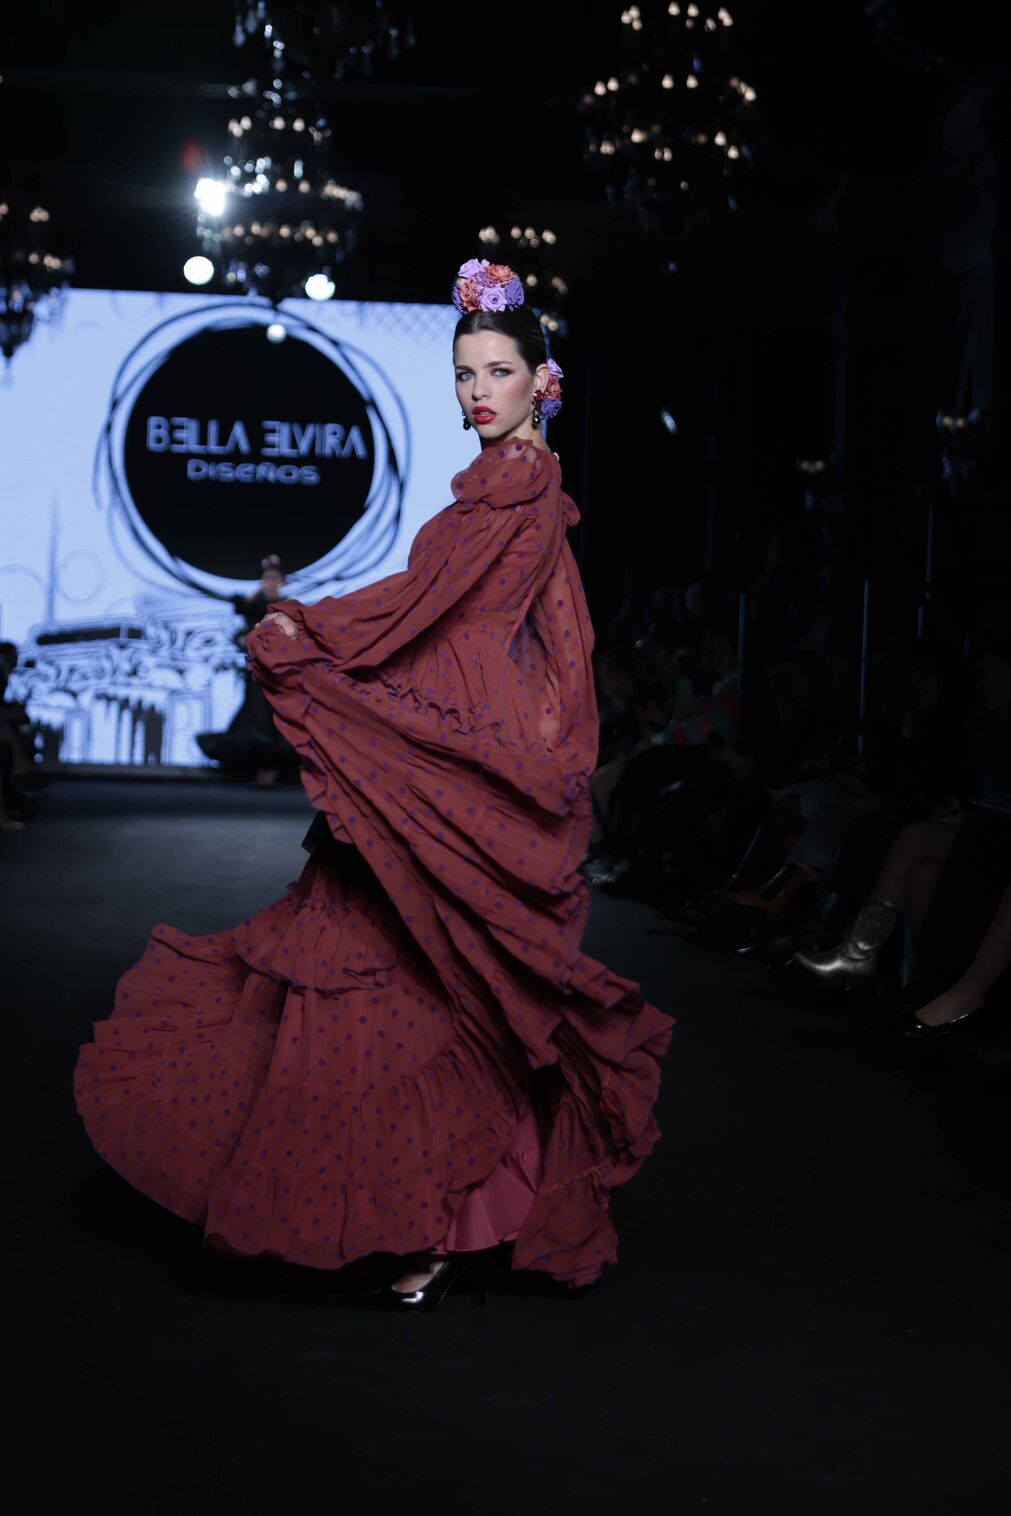 El desfile de Bella Elvira en We Love Flamenco 2024, todas las fotos